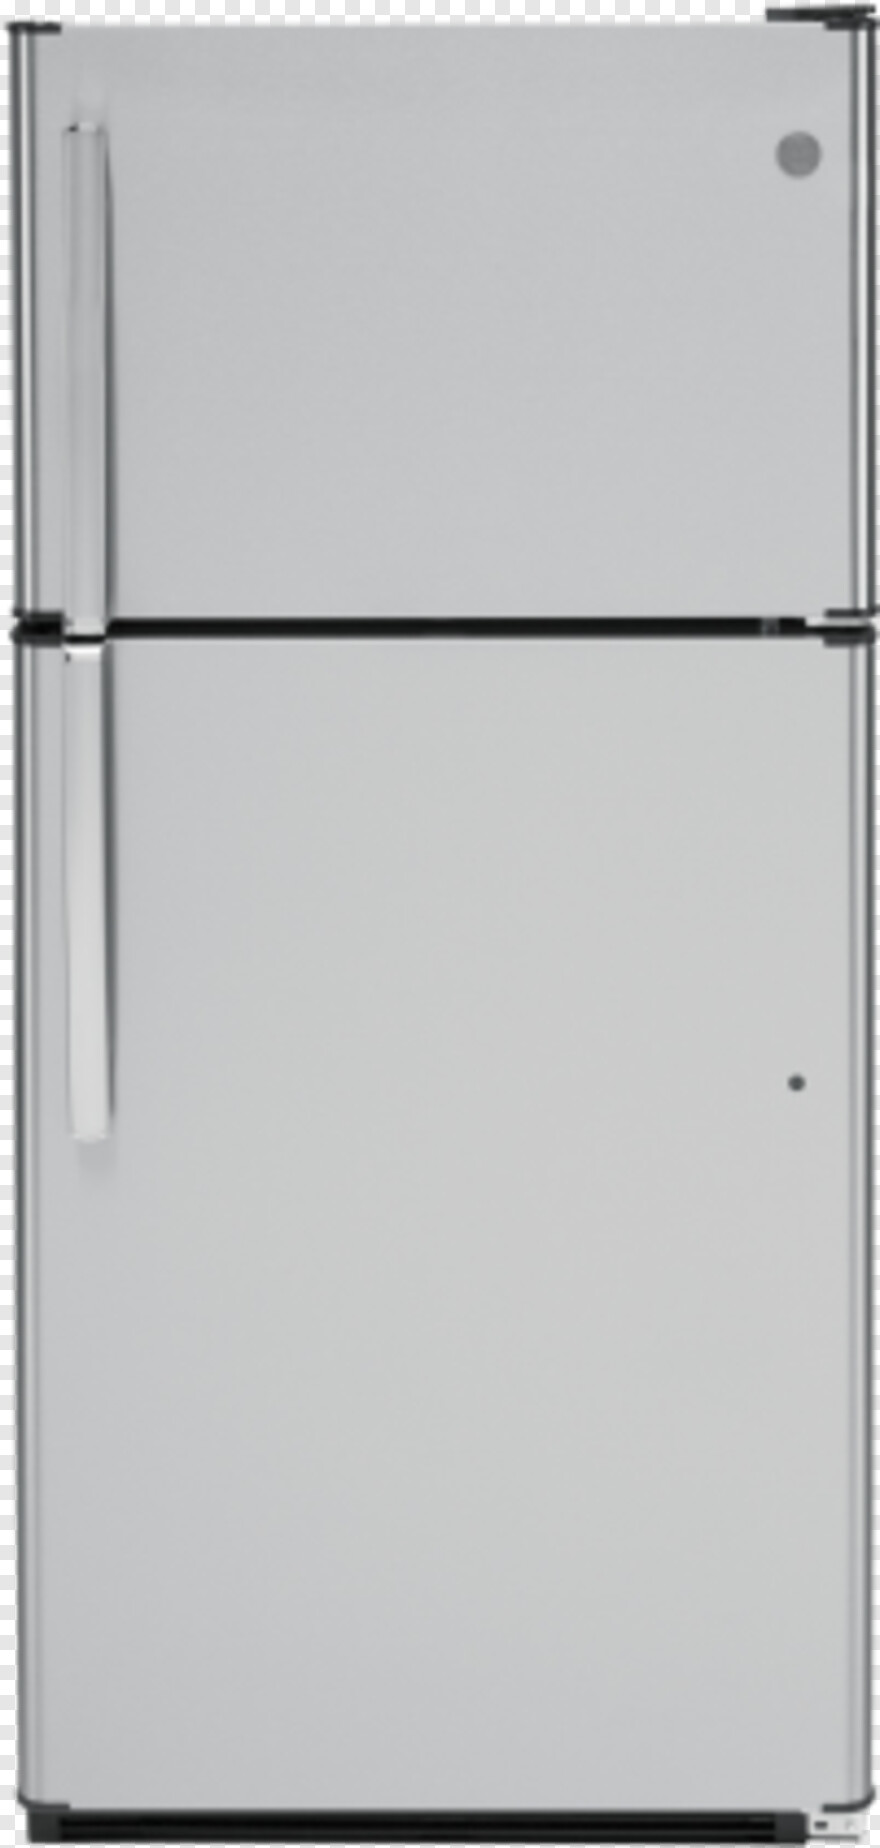 refrigerator # 636750